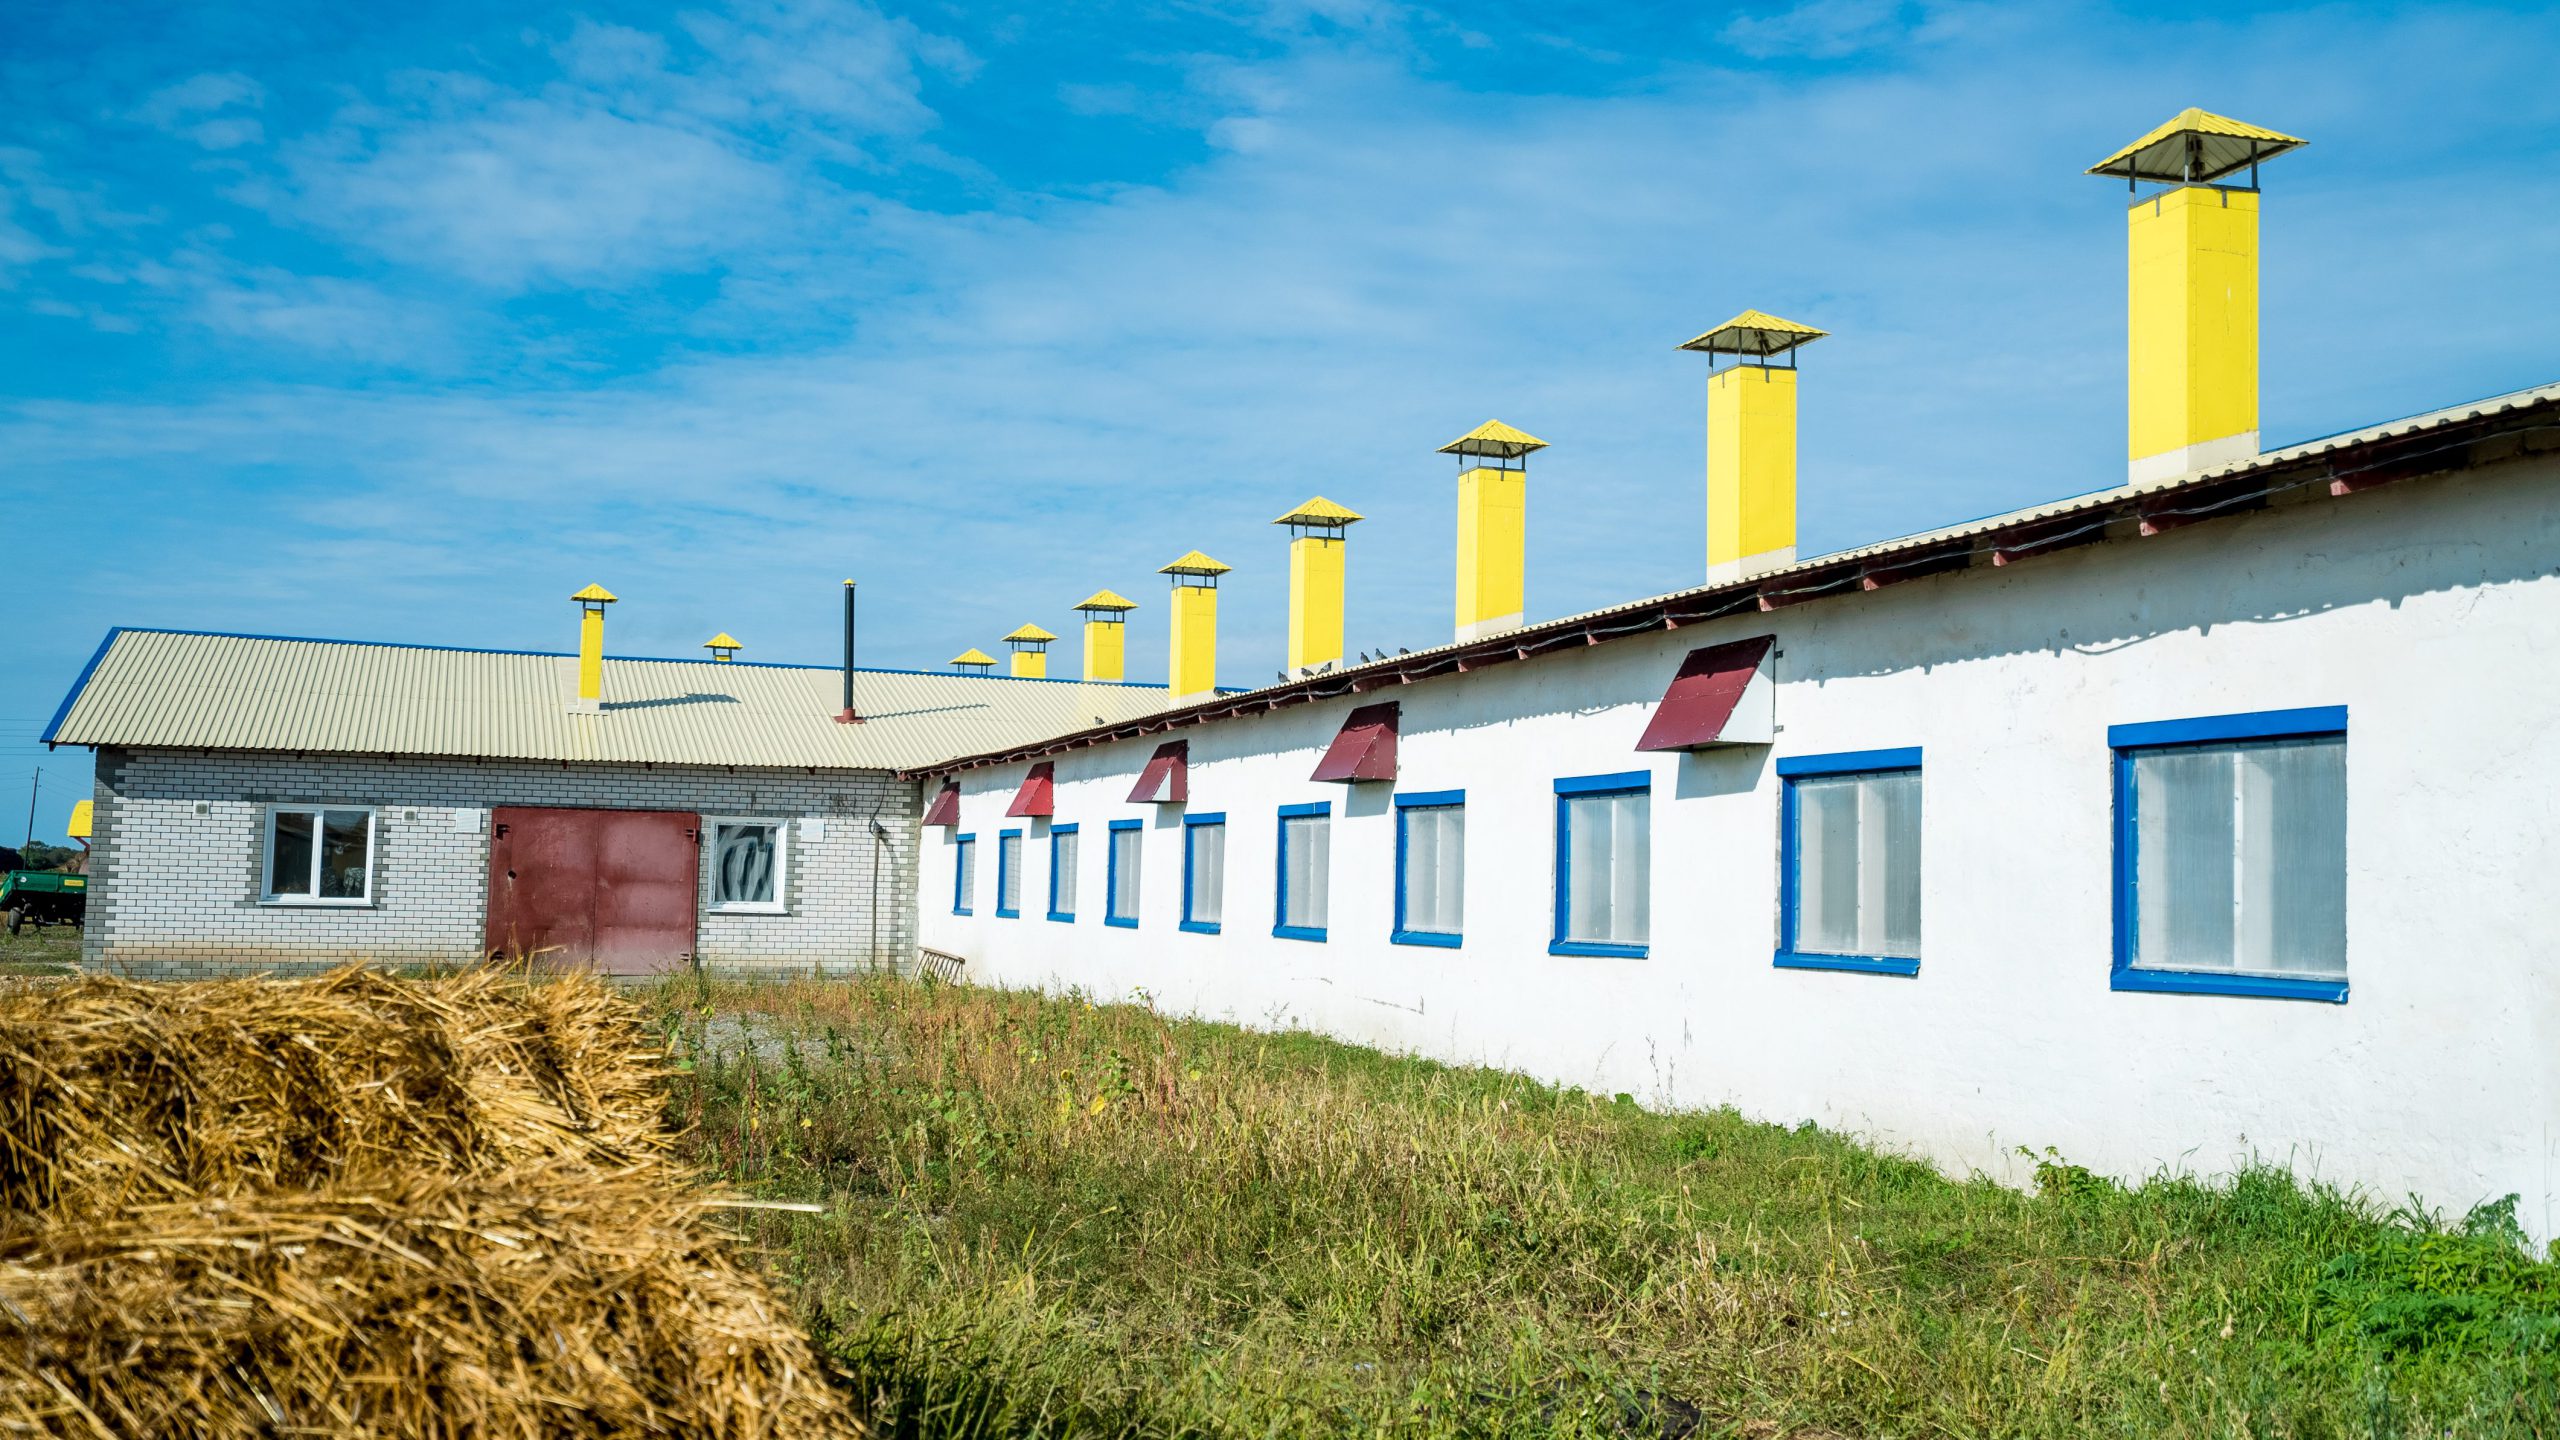 нешний вид родильного отделения комплекса в с. Паутово (принадлежит АКХ "Ануйское") после реконструкции